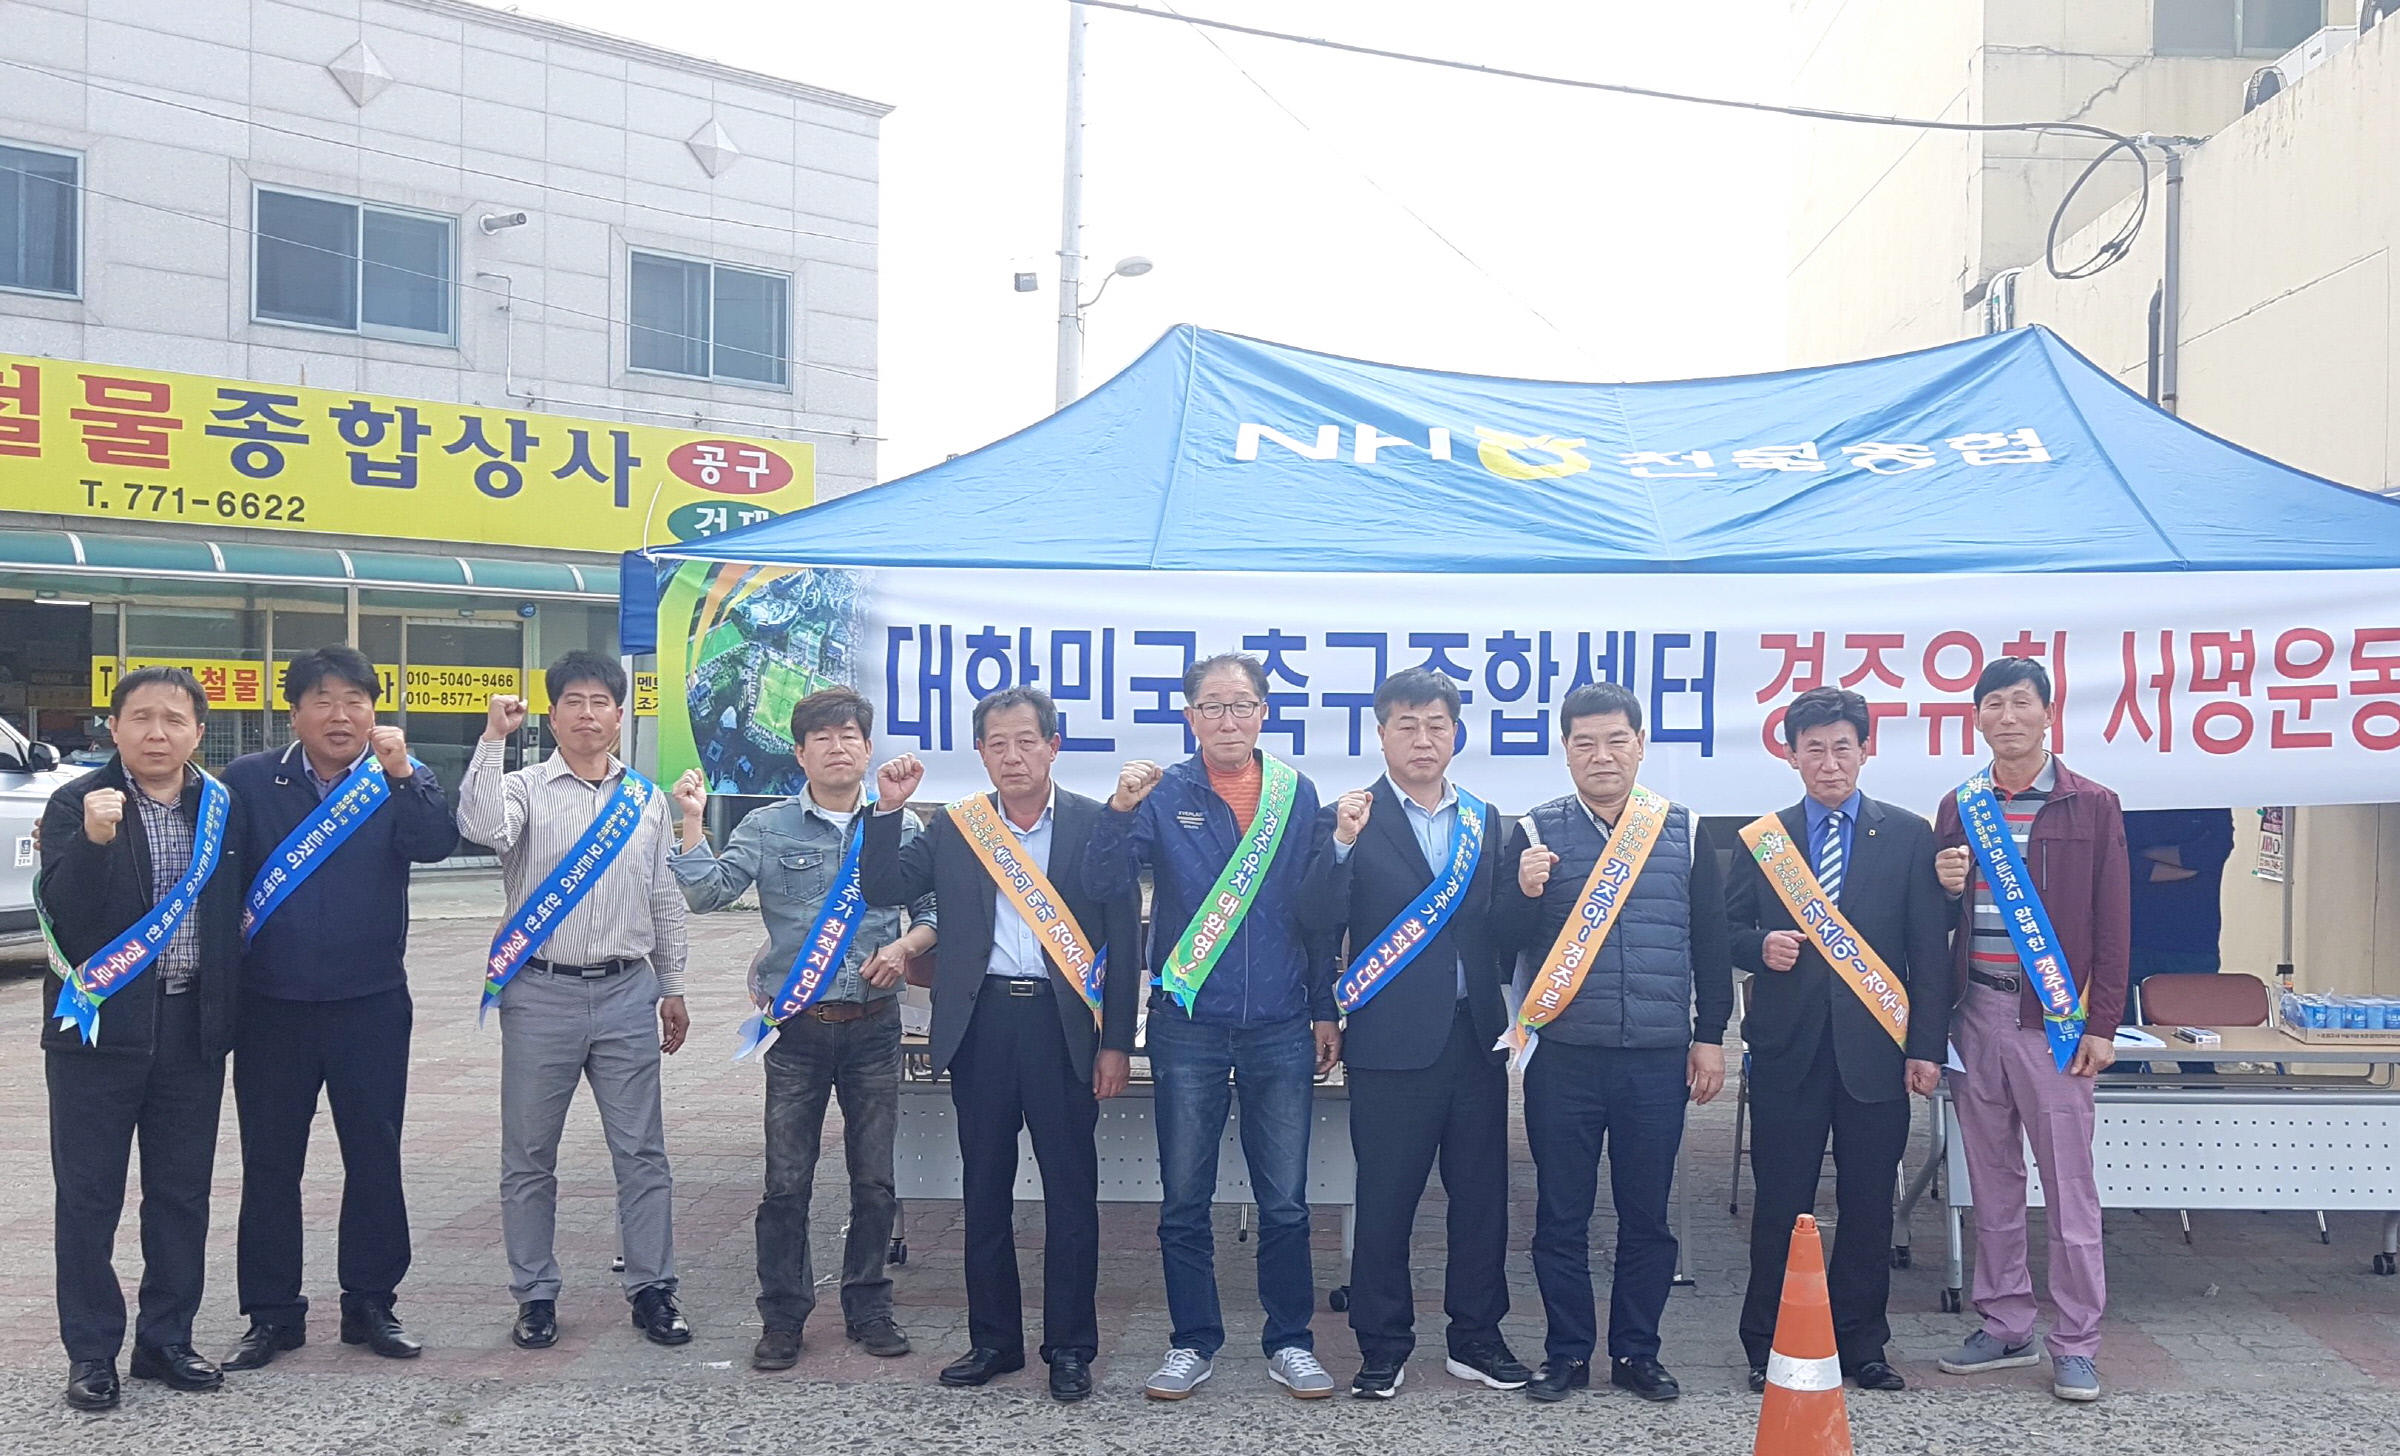 대한민국 축구종합센터 경주유치 서명운동